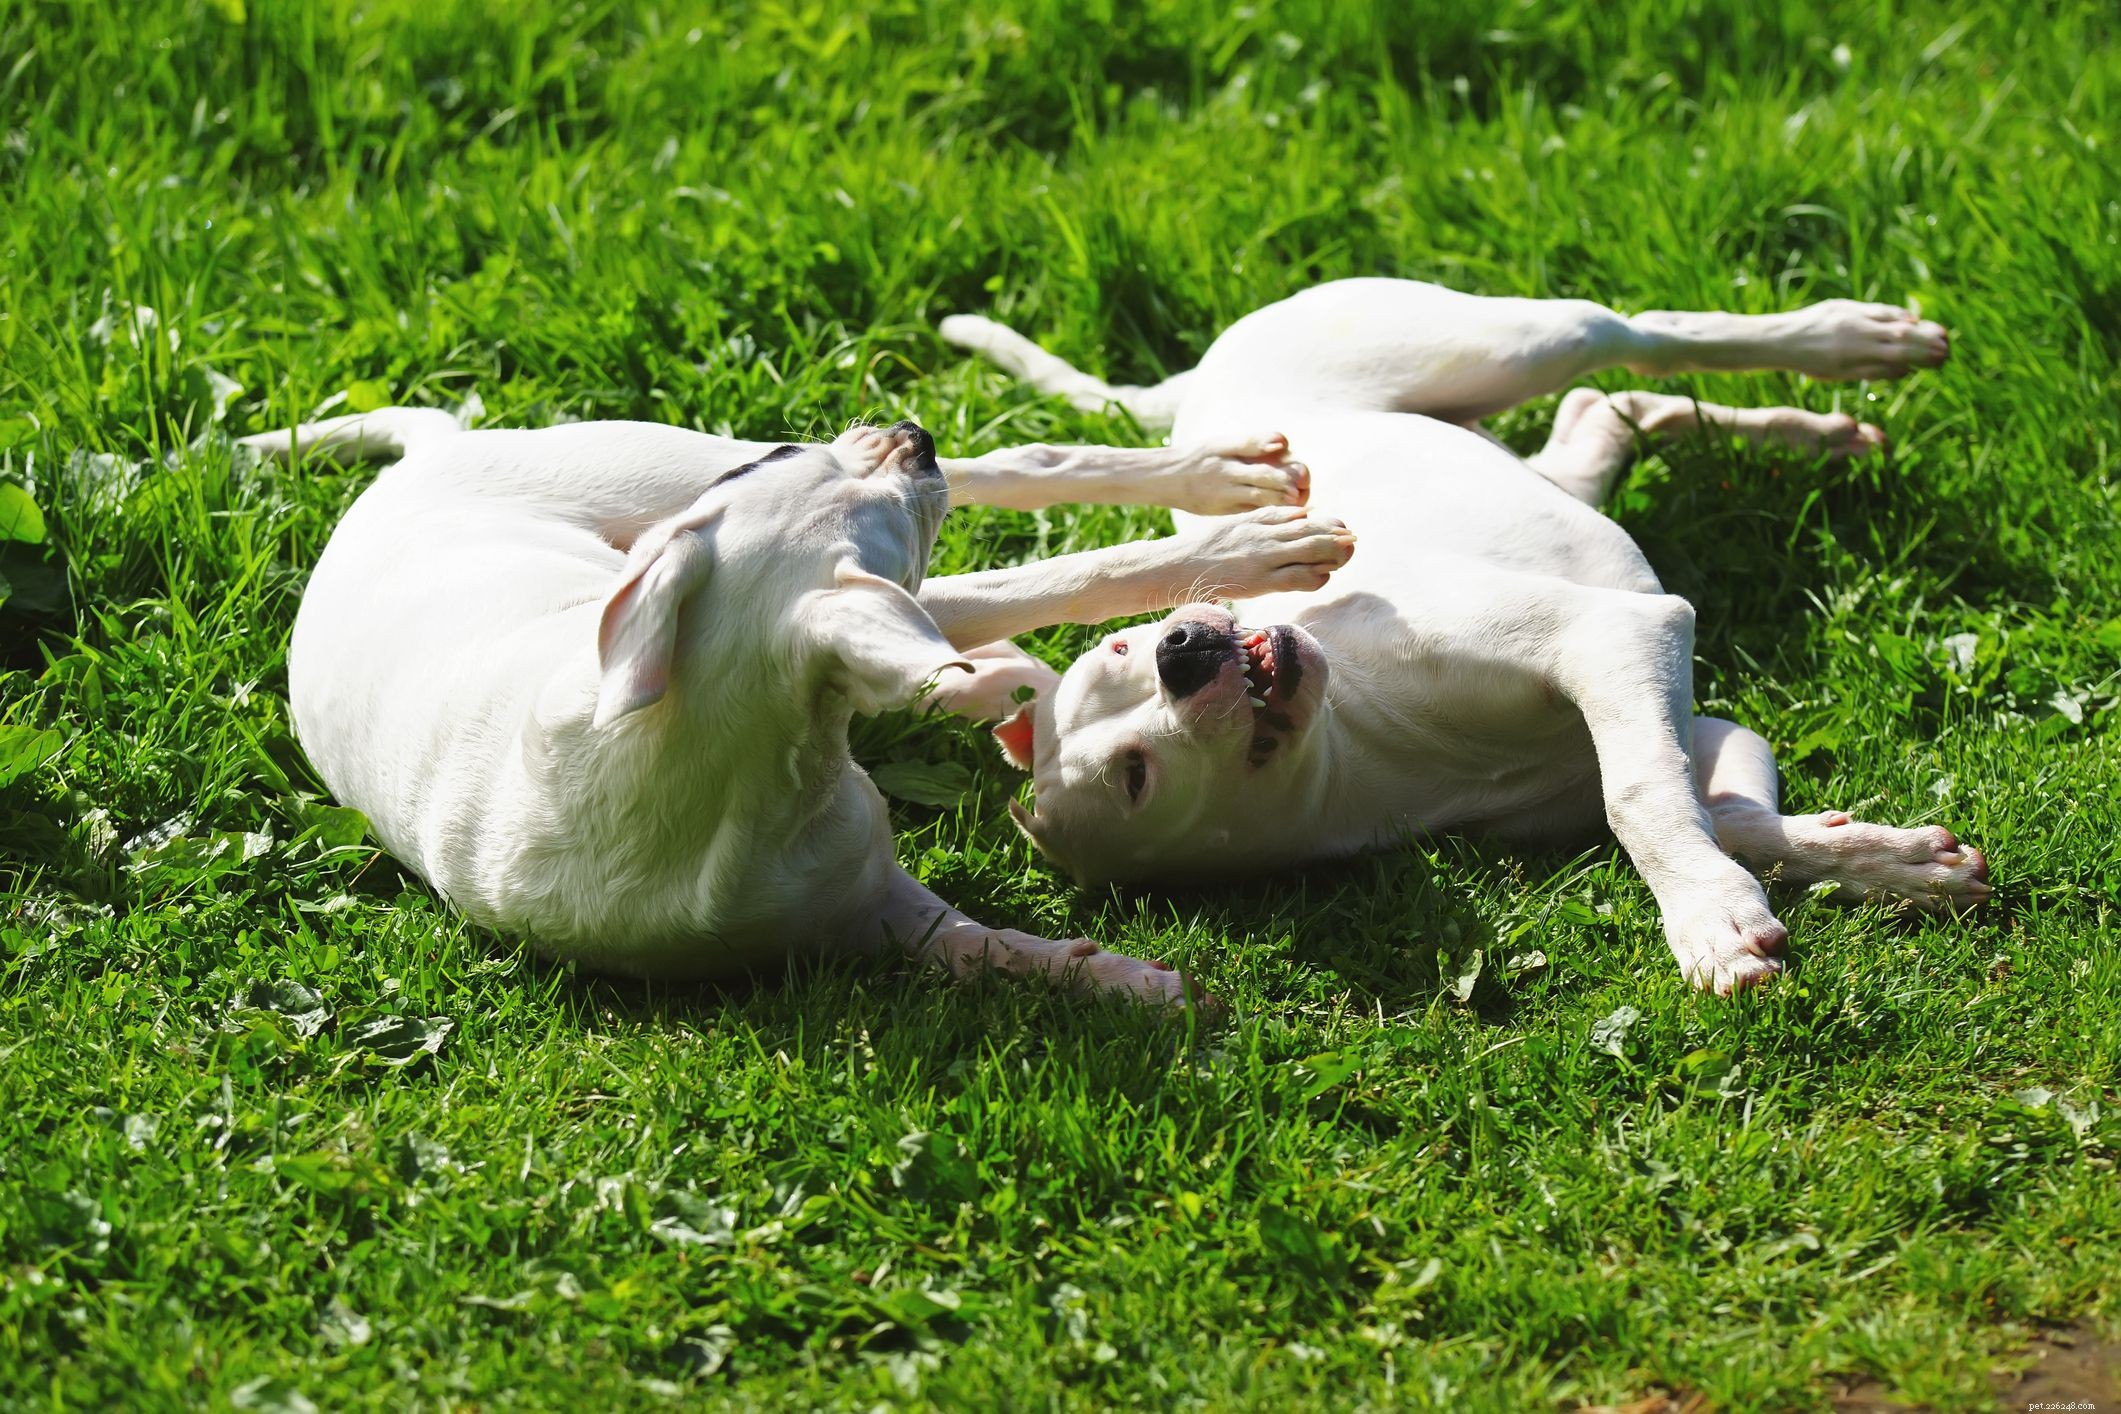 Dogue argentin :caractéristiques et soins de la race de chien